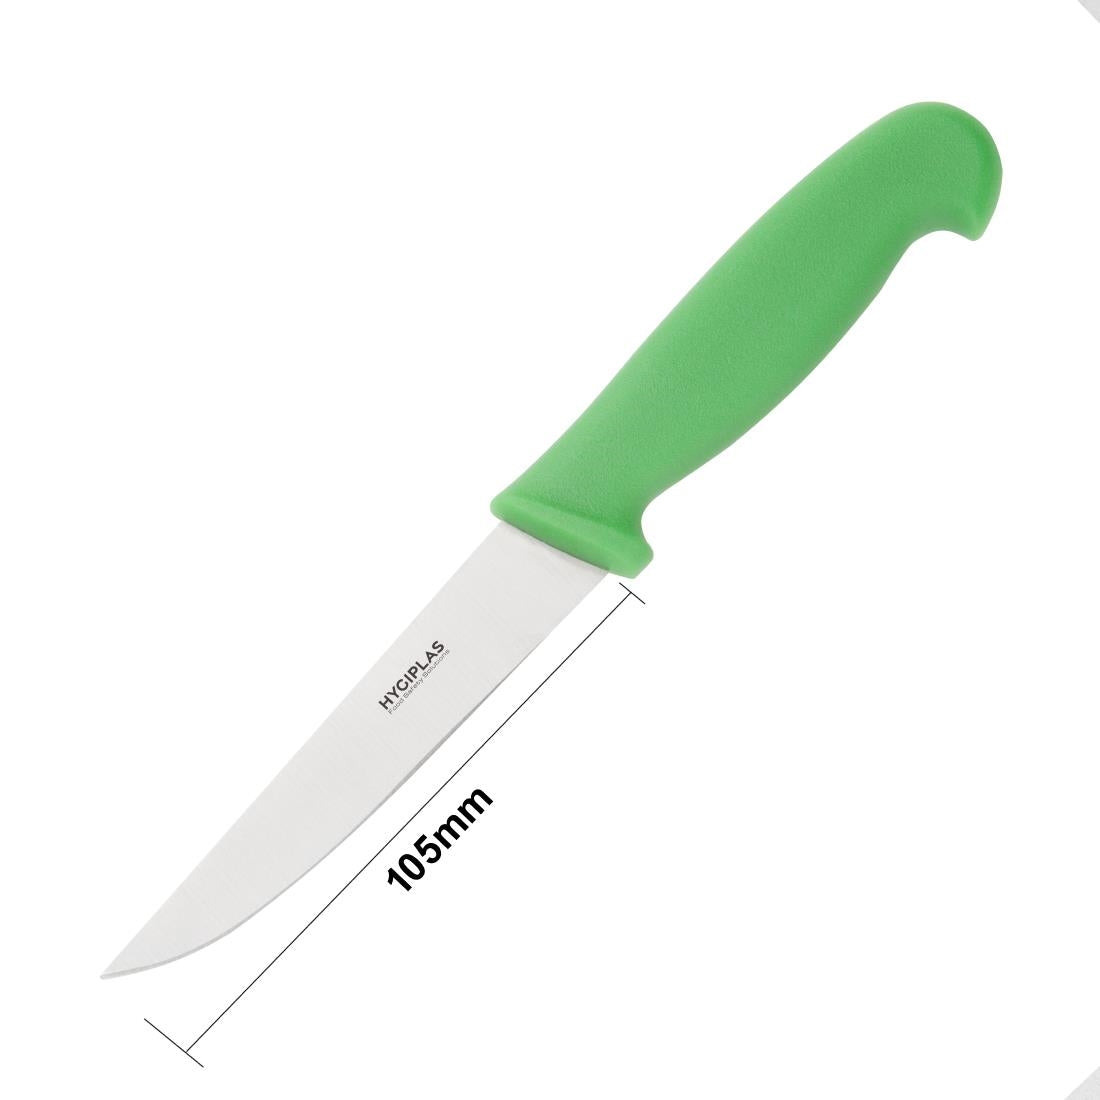 C860 Hygiplas Vegetable Knife Green 10cm JD Catering Equipment Solutions Ltd